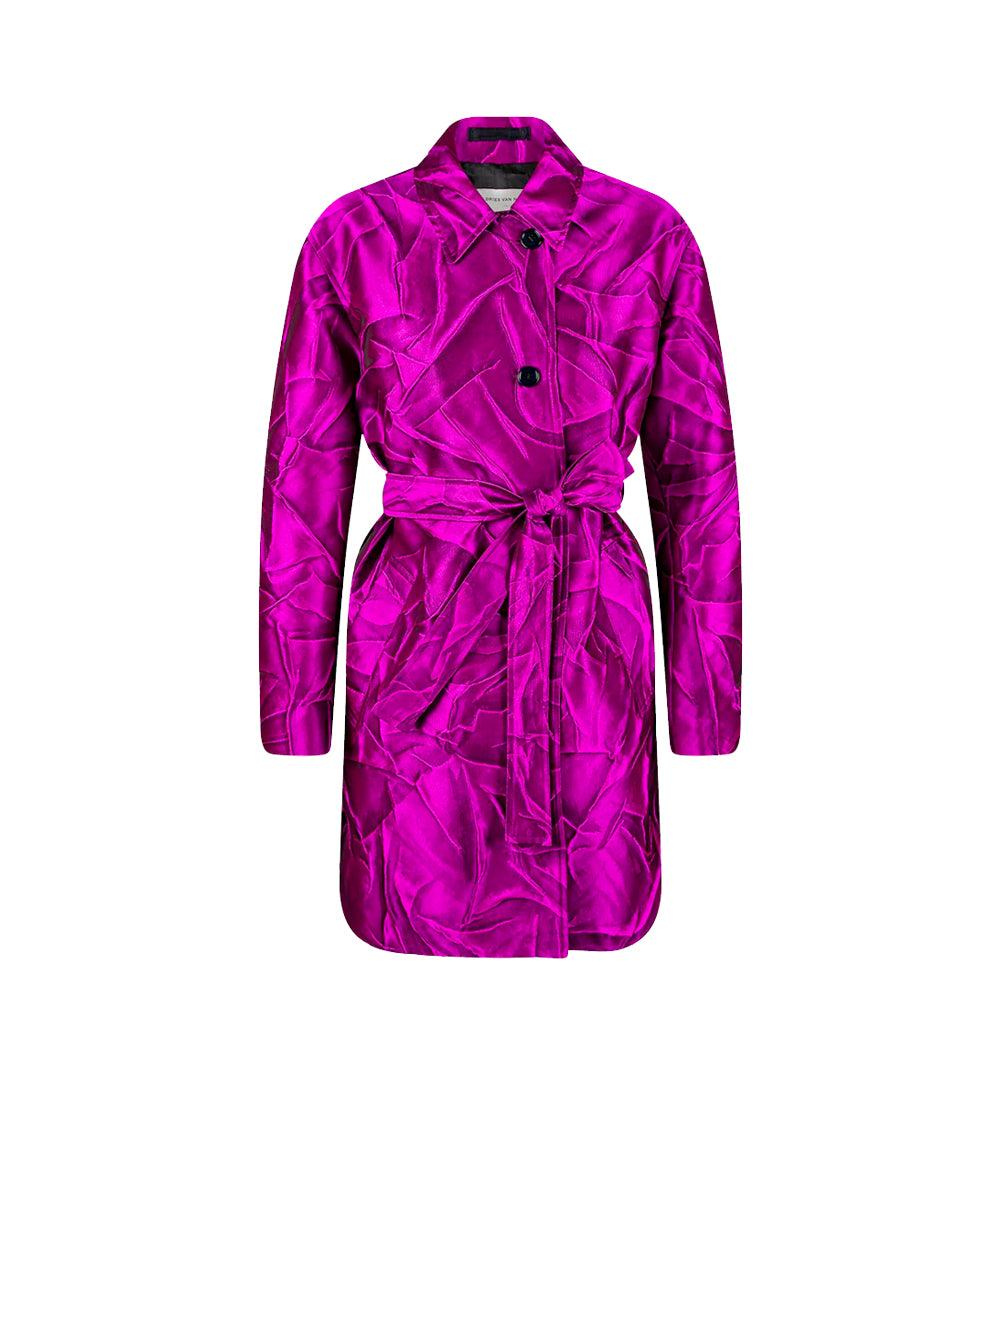 Dries Van Noten Women's Pink Belted Jacquard Jacket